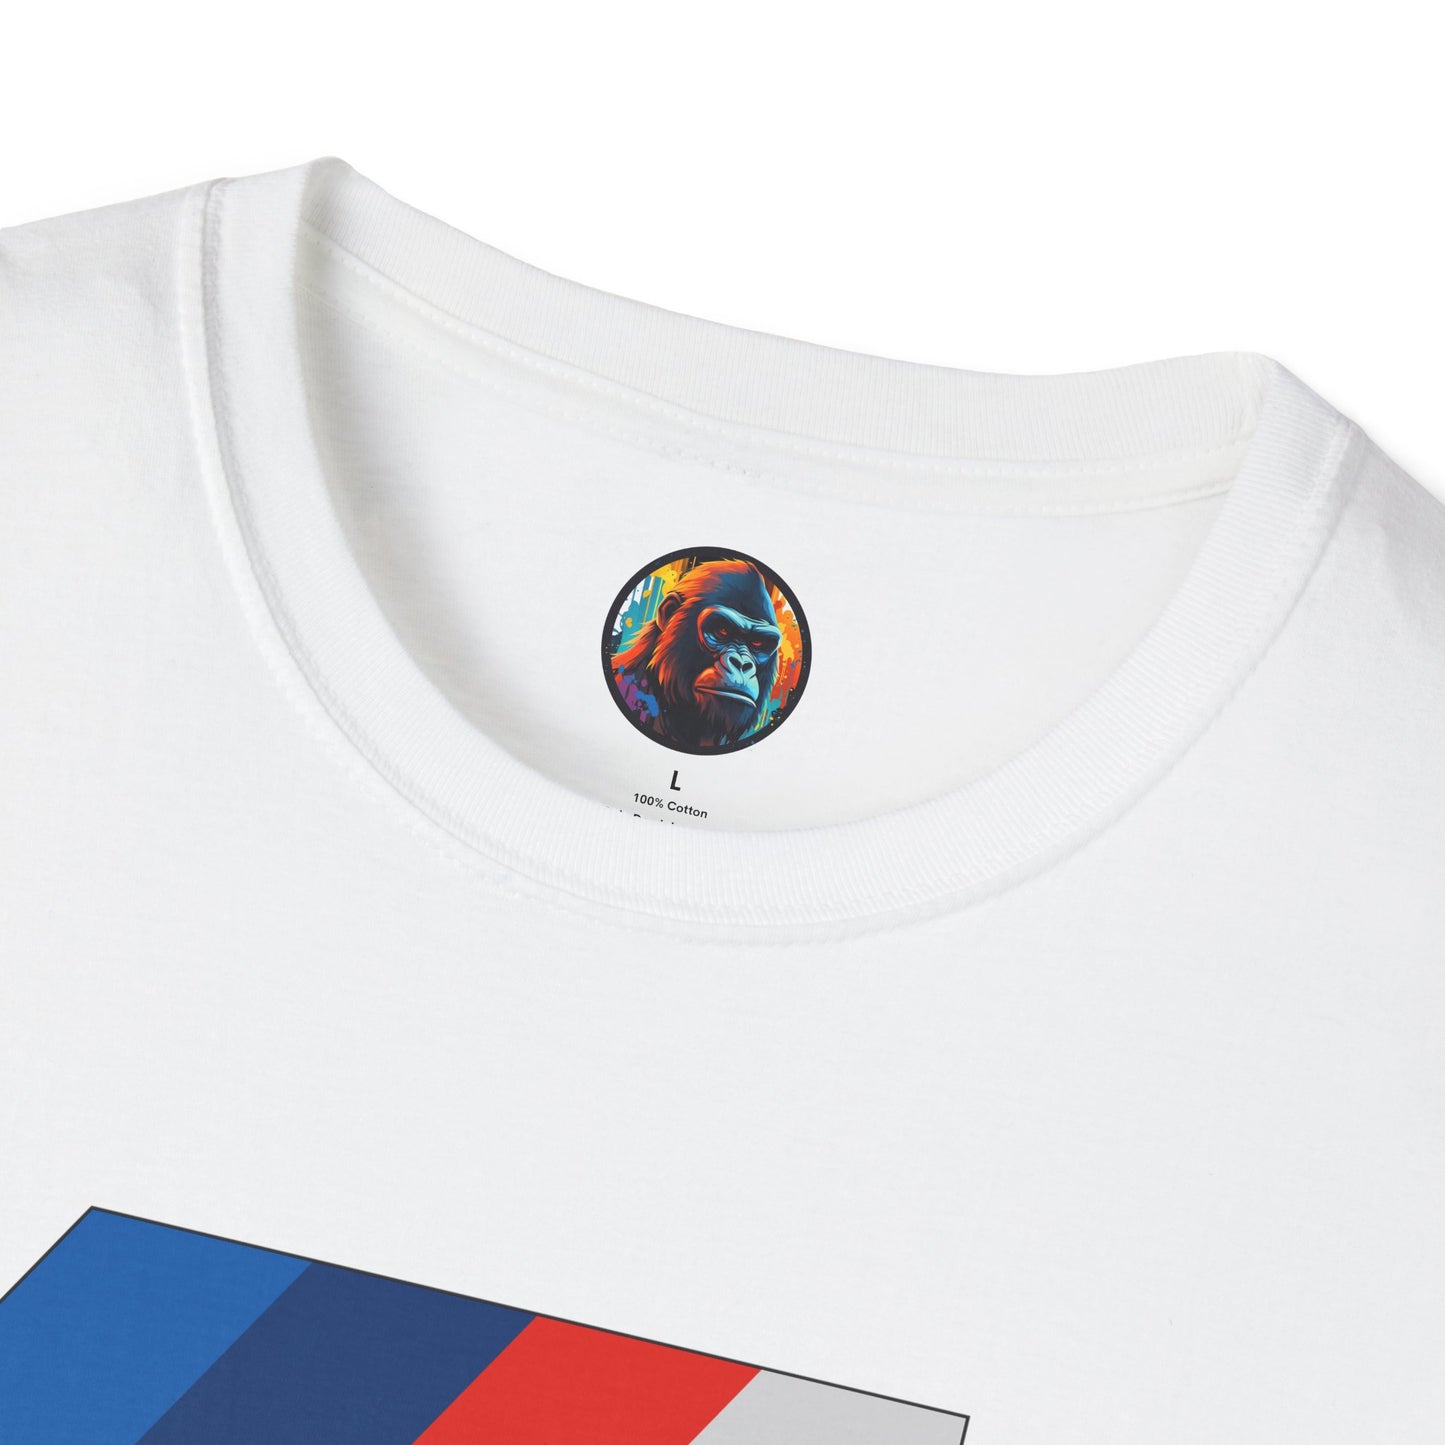 BMW M Large Logo T-Shirt